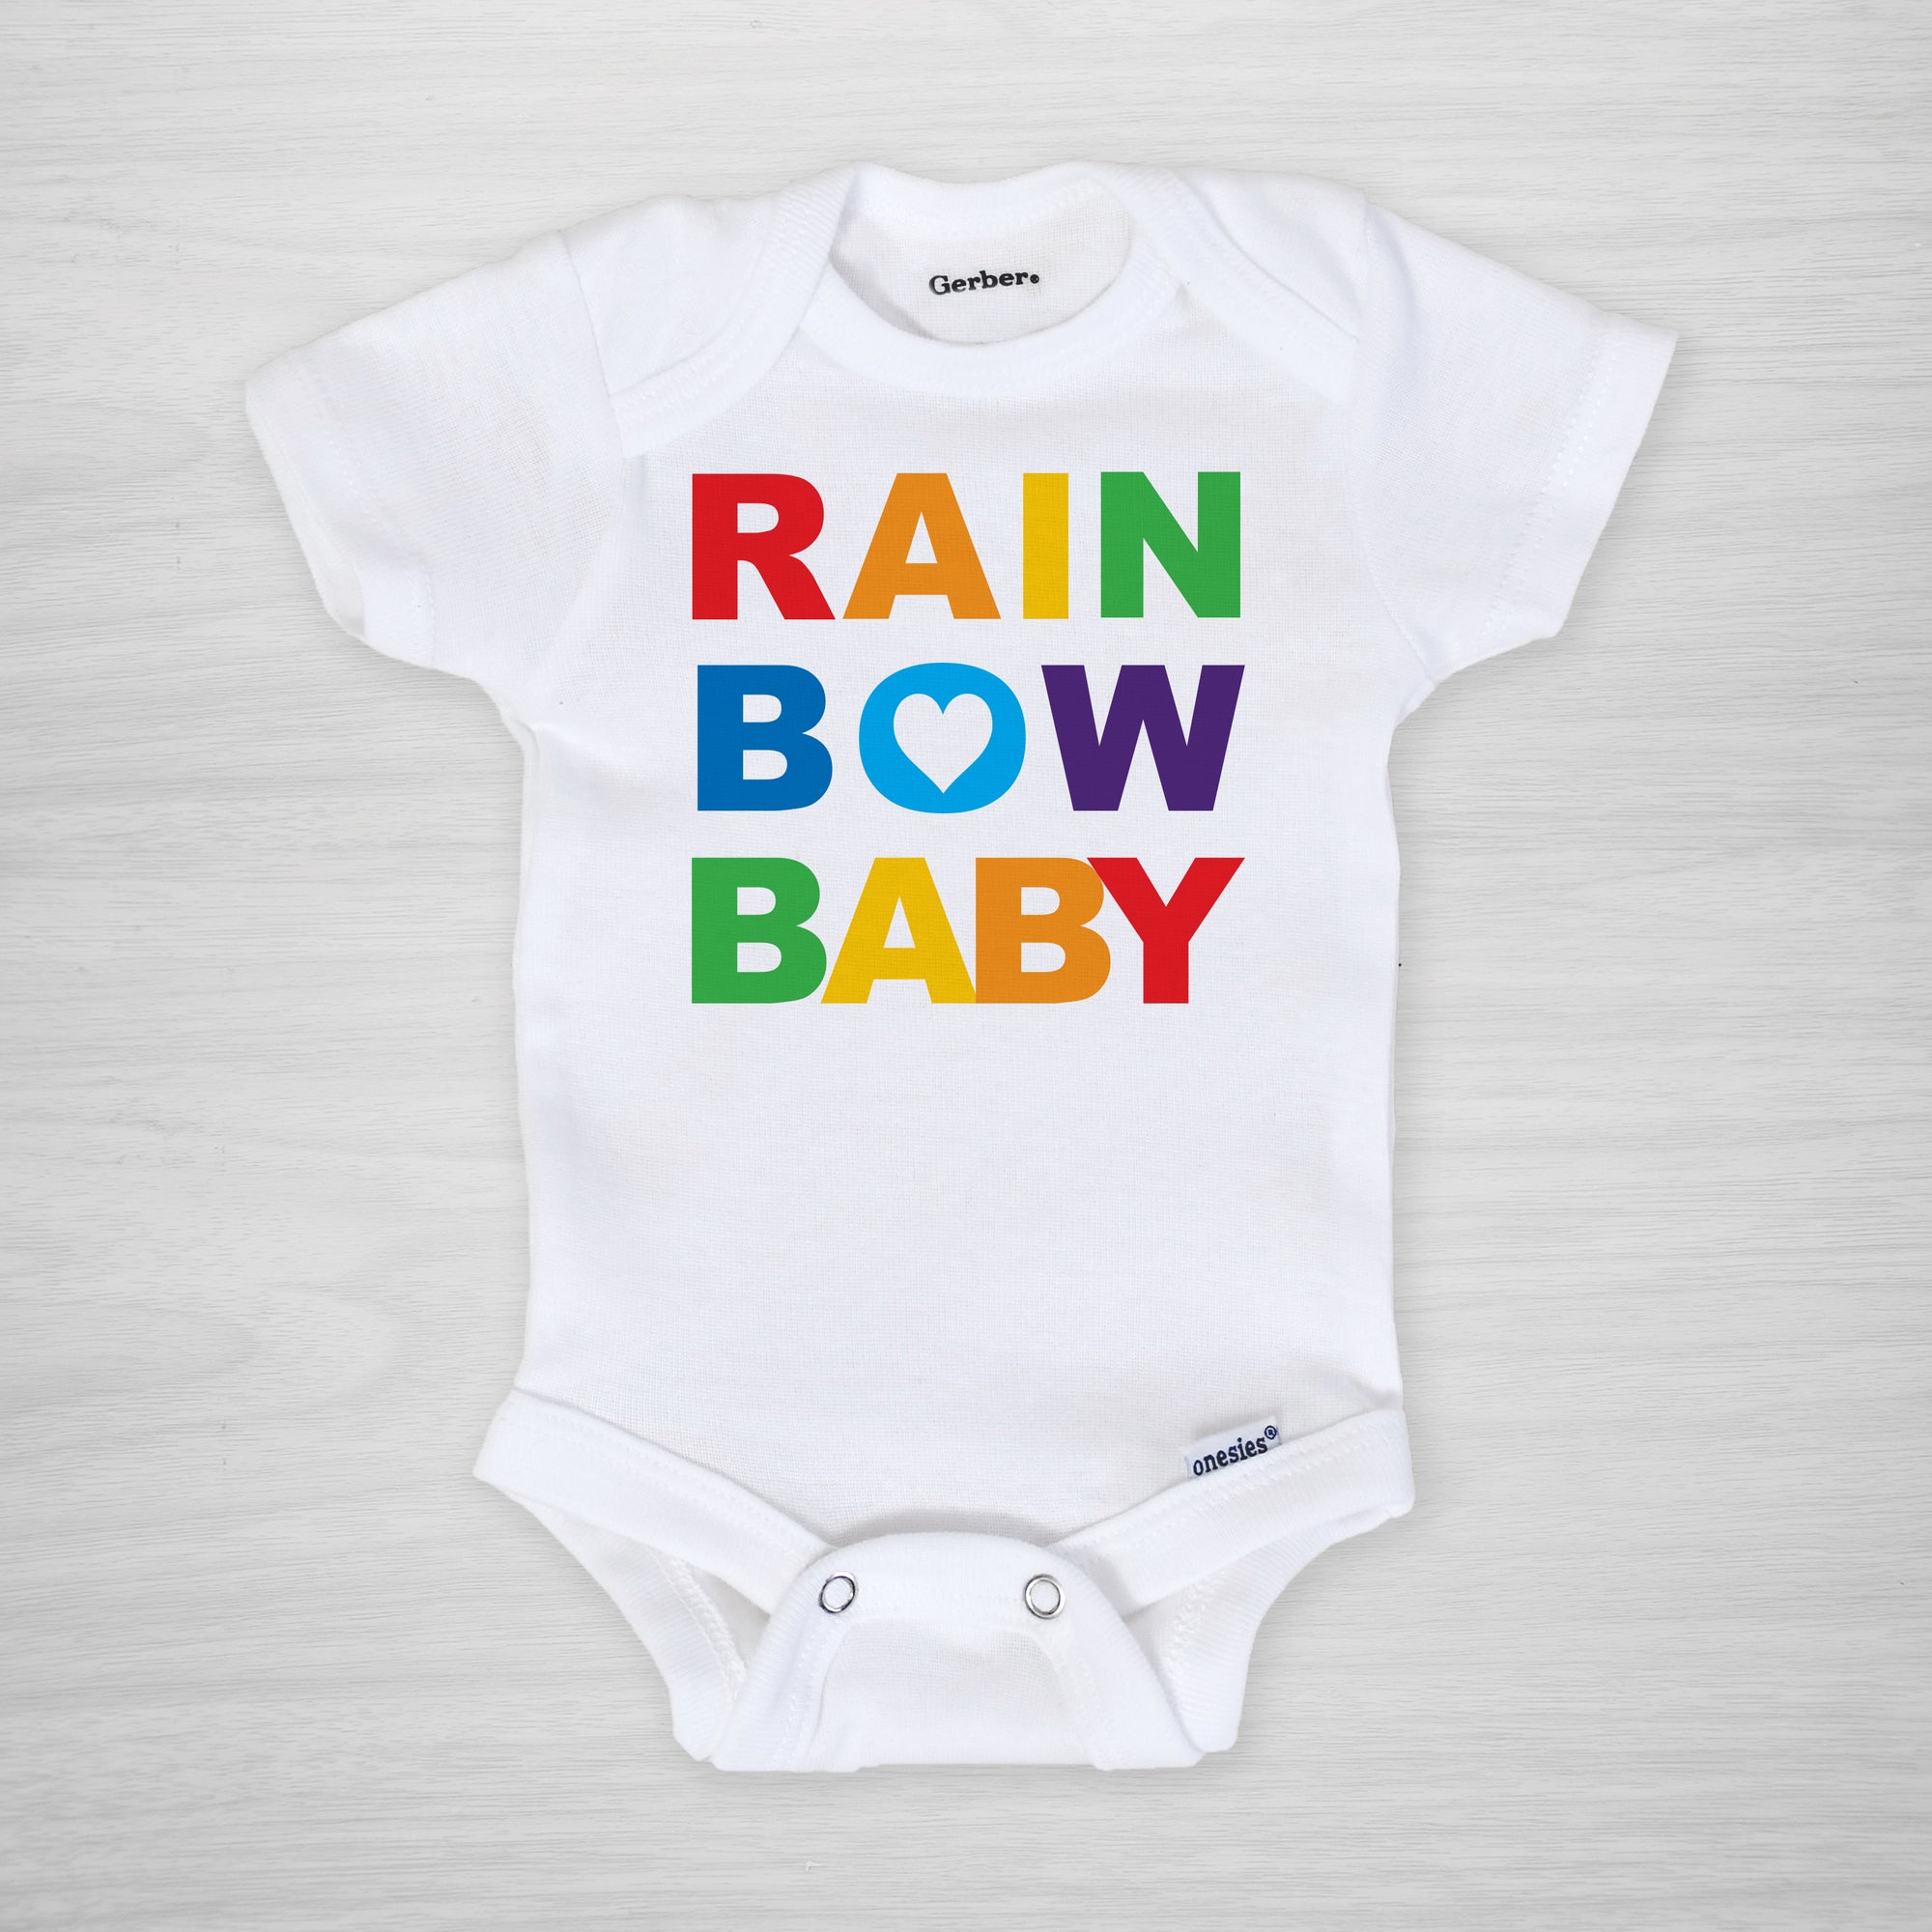 Rainbow Baby Onesie®, long sleeved